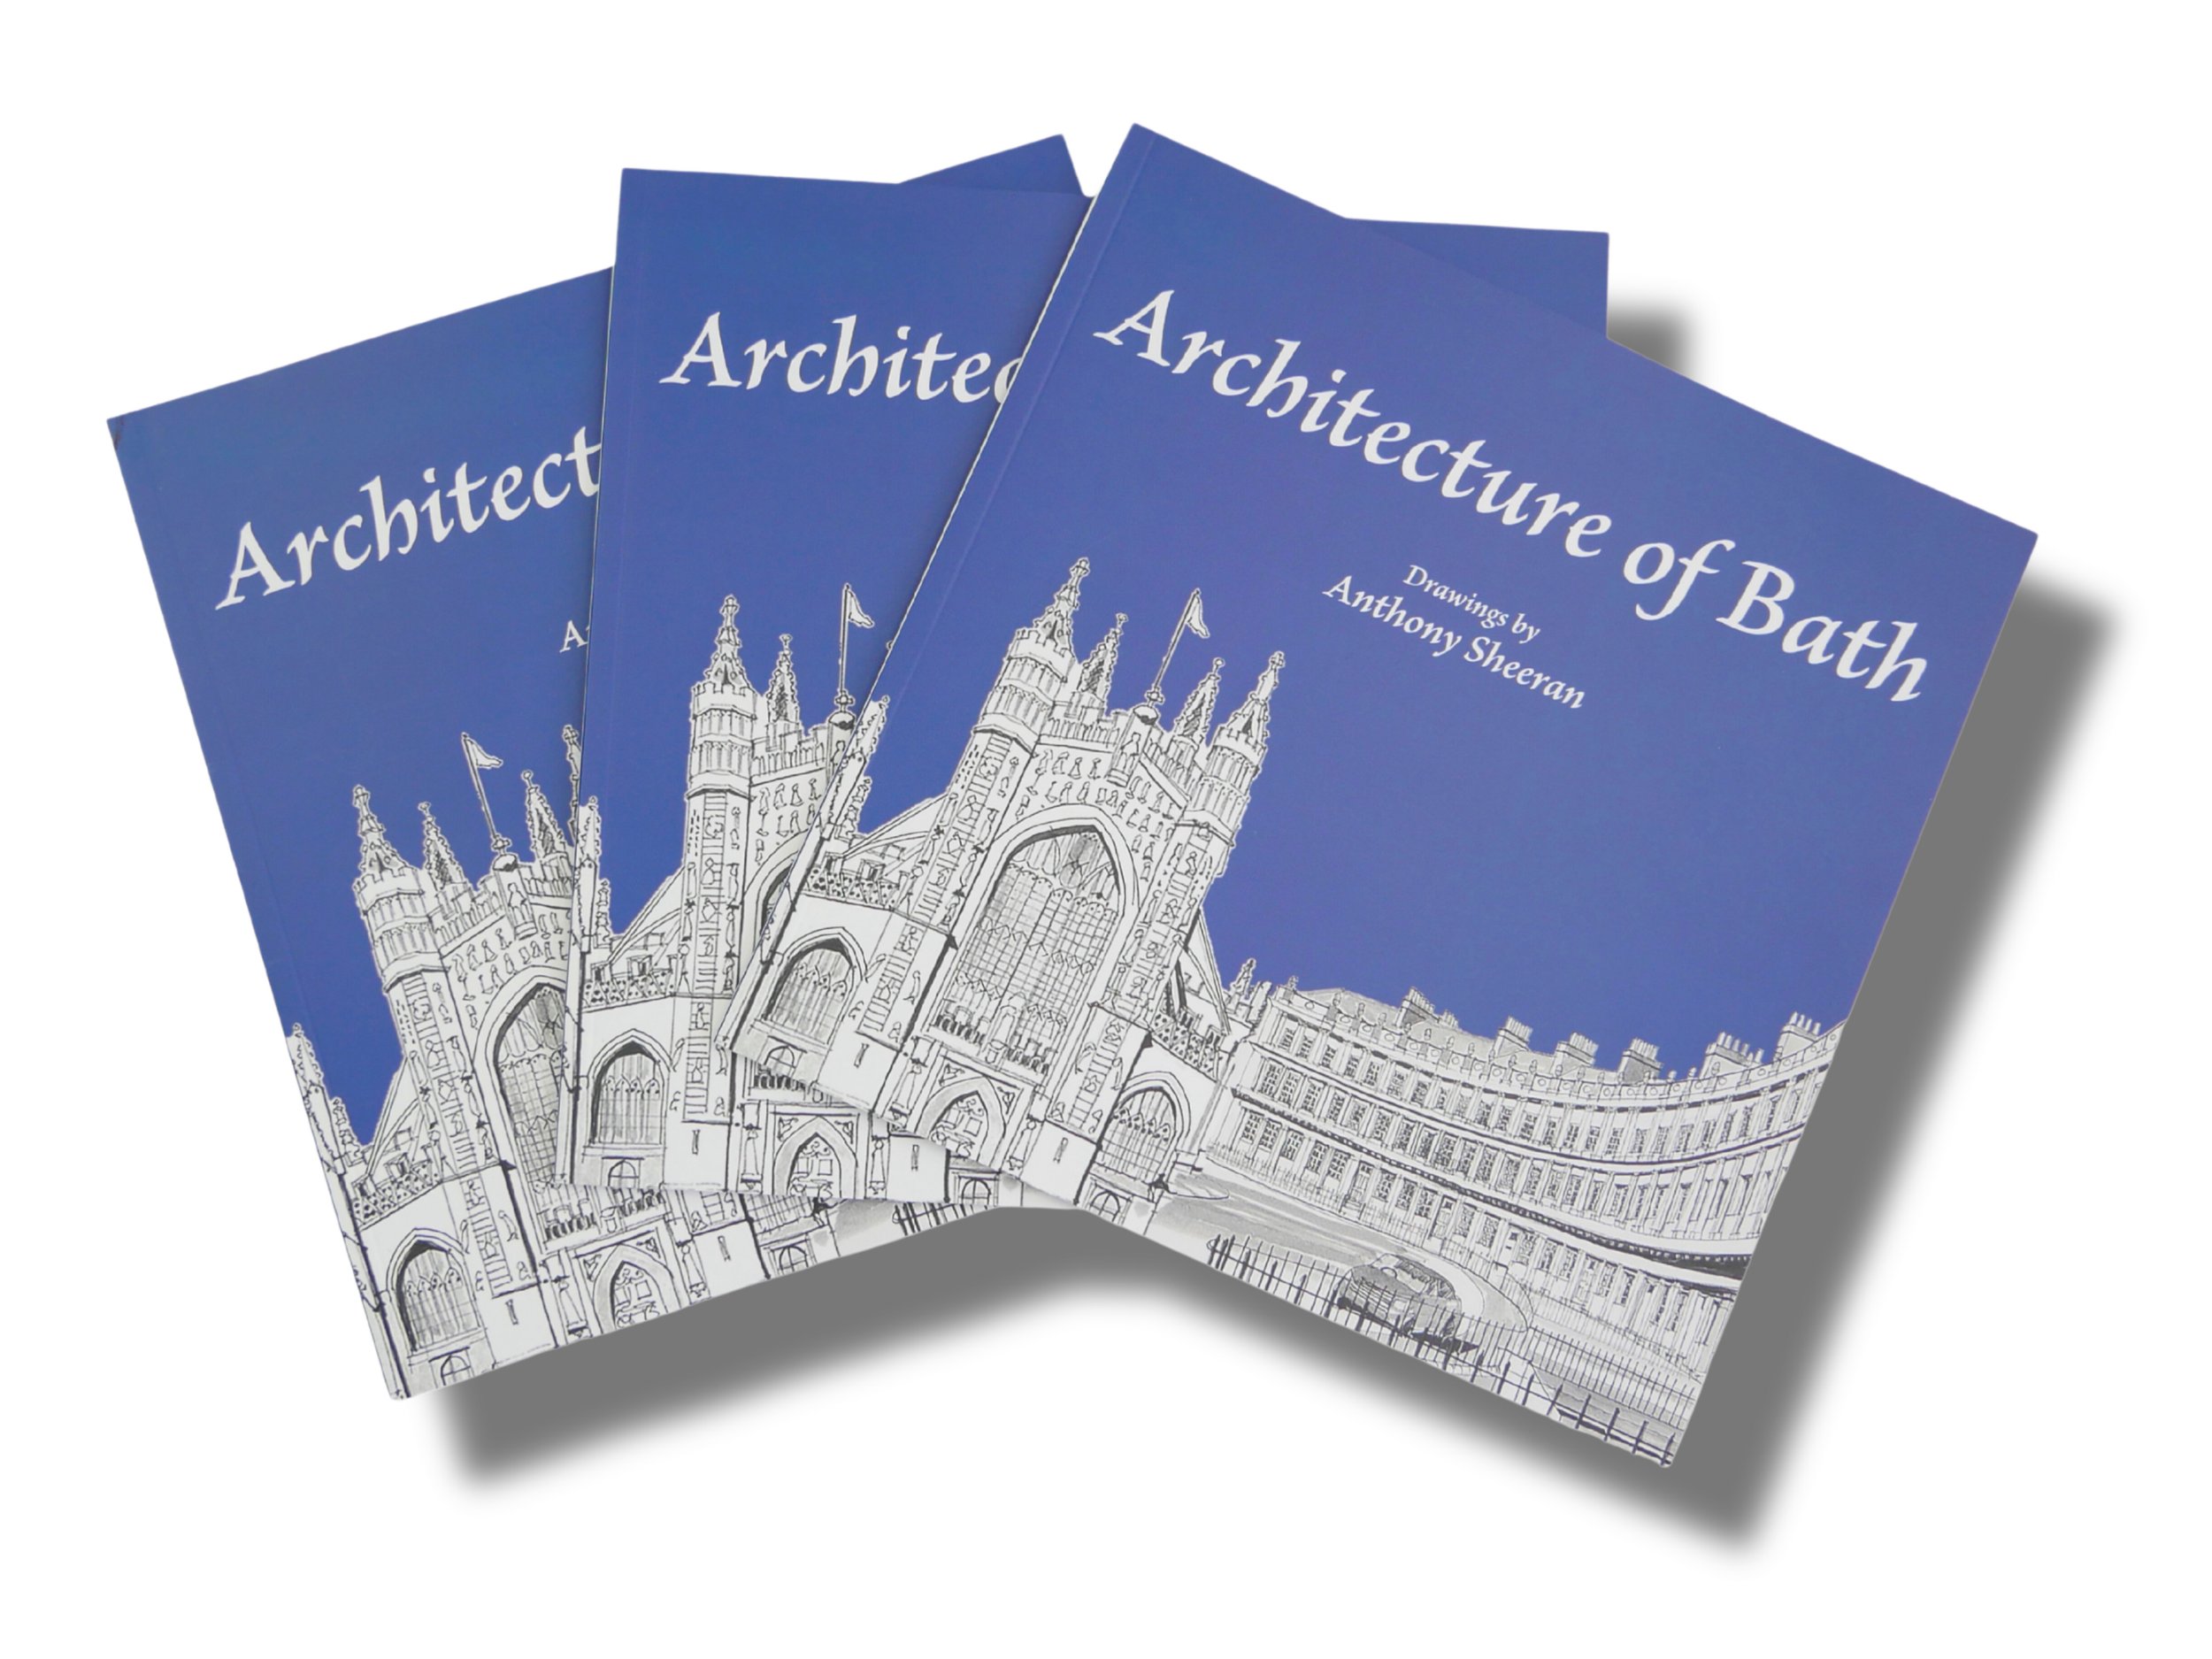 Madeinbradfordonavon-Anthony Sheeran - Architecture of Bath Book.jpg